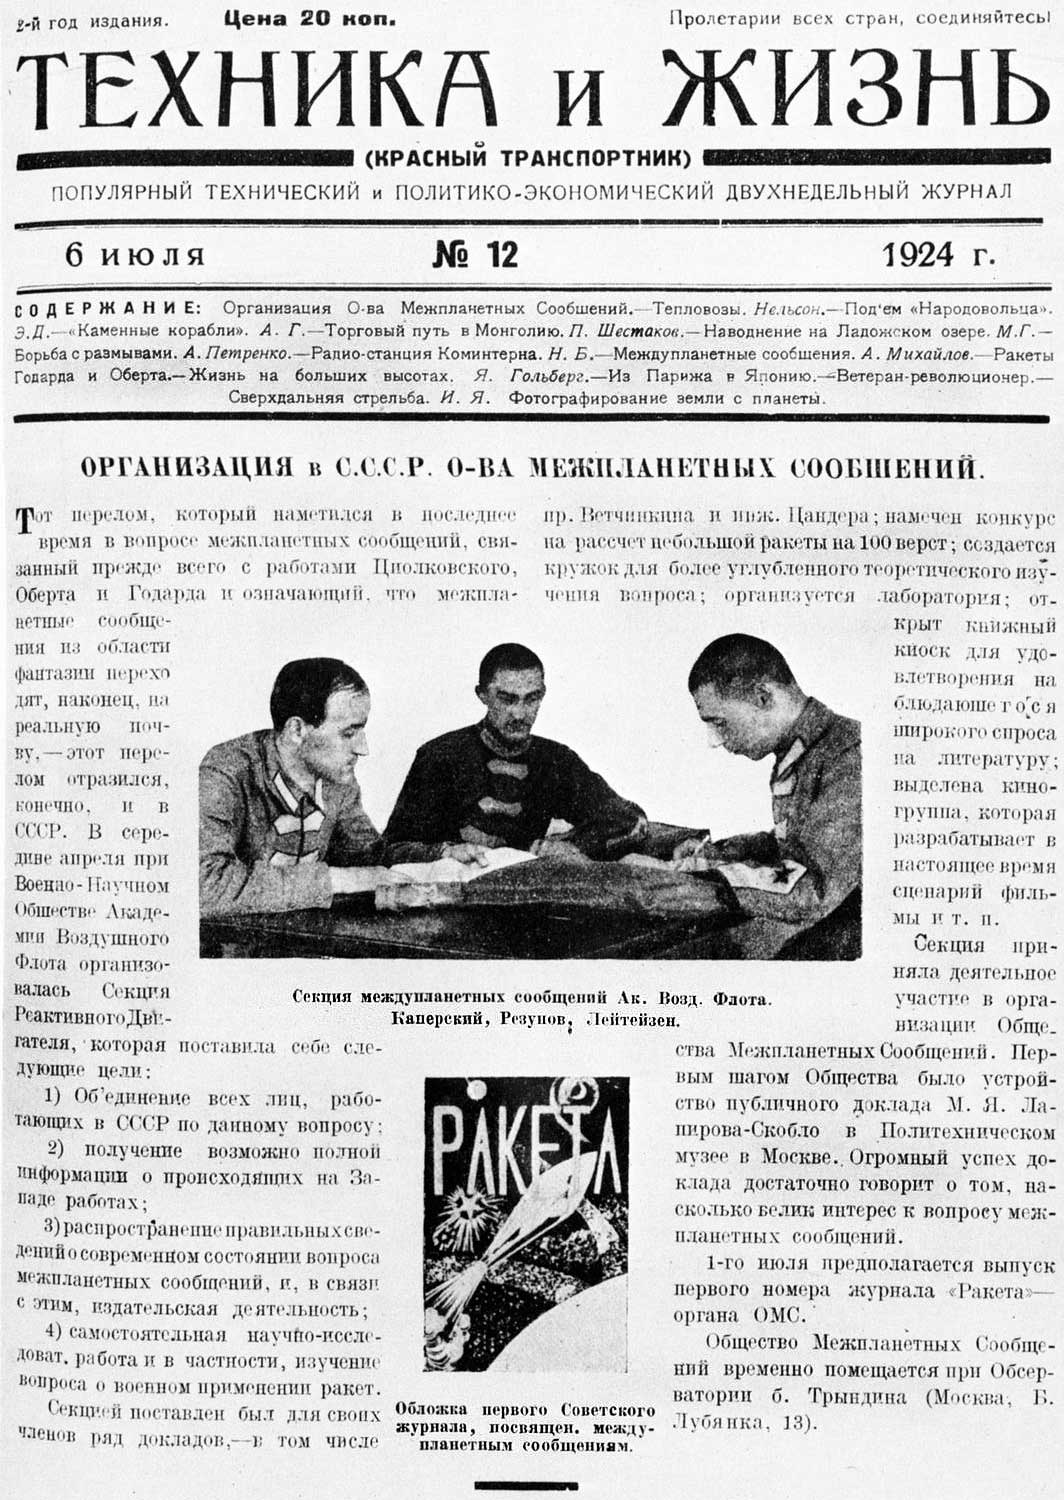 Великая страна СССР,журнал Техника и жизнь -- N12 -- 6.07.1924, общество изучения межпланетных сообщений